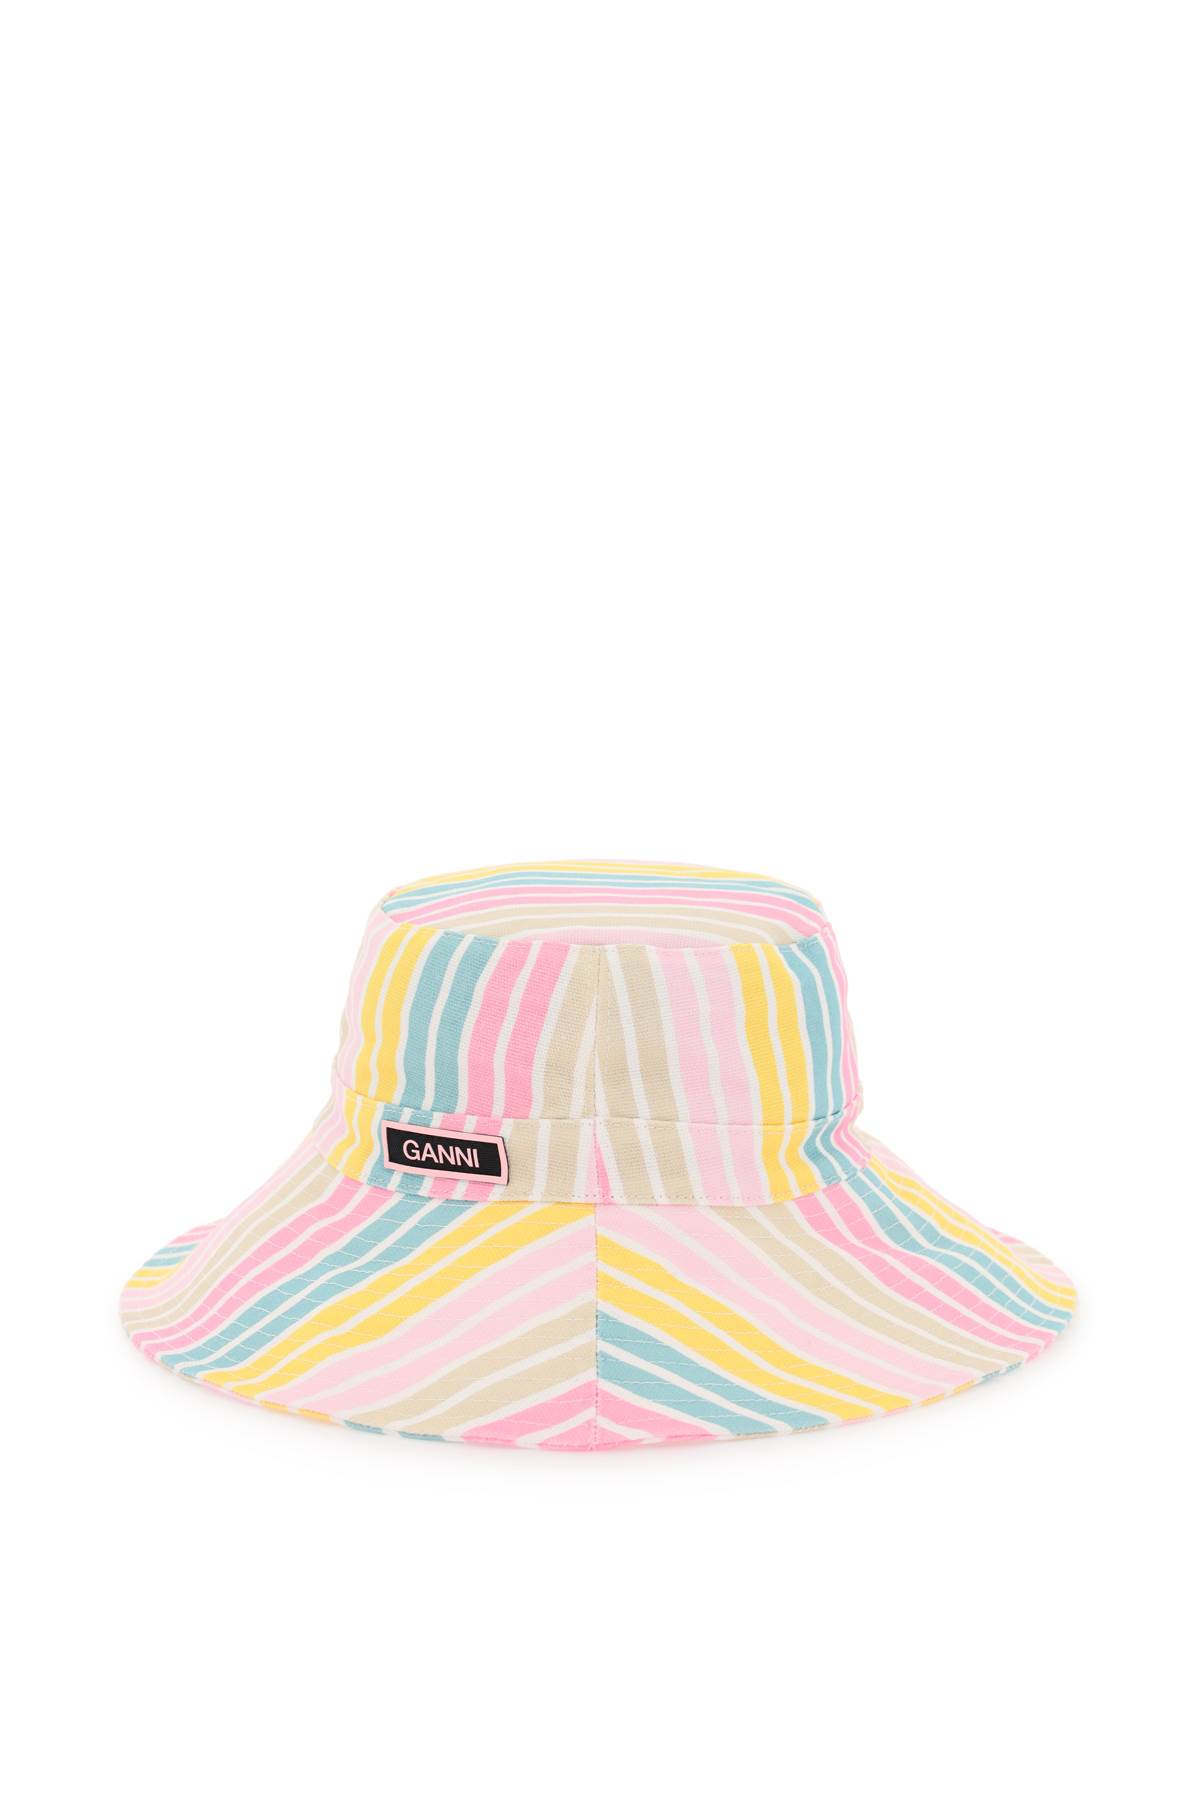 Ganni Stripe Bucket Hat